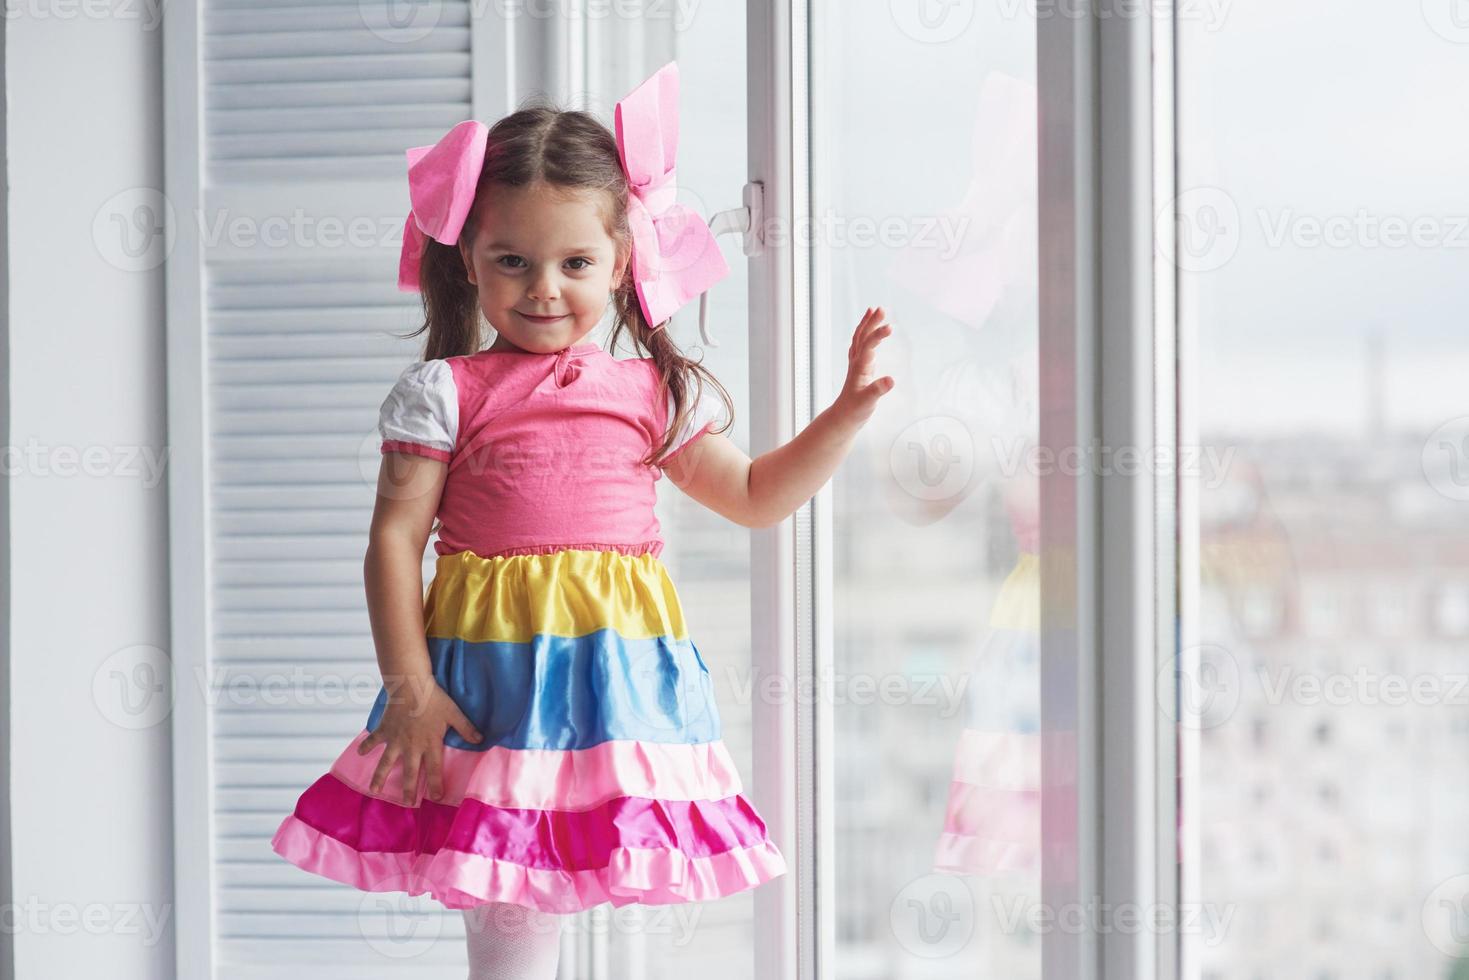 garota de vestido colorido tocando o vidro da janela e olhando para a câmera foto